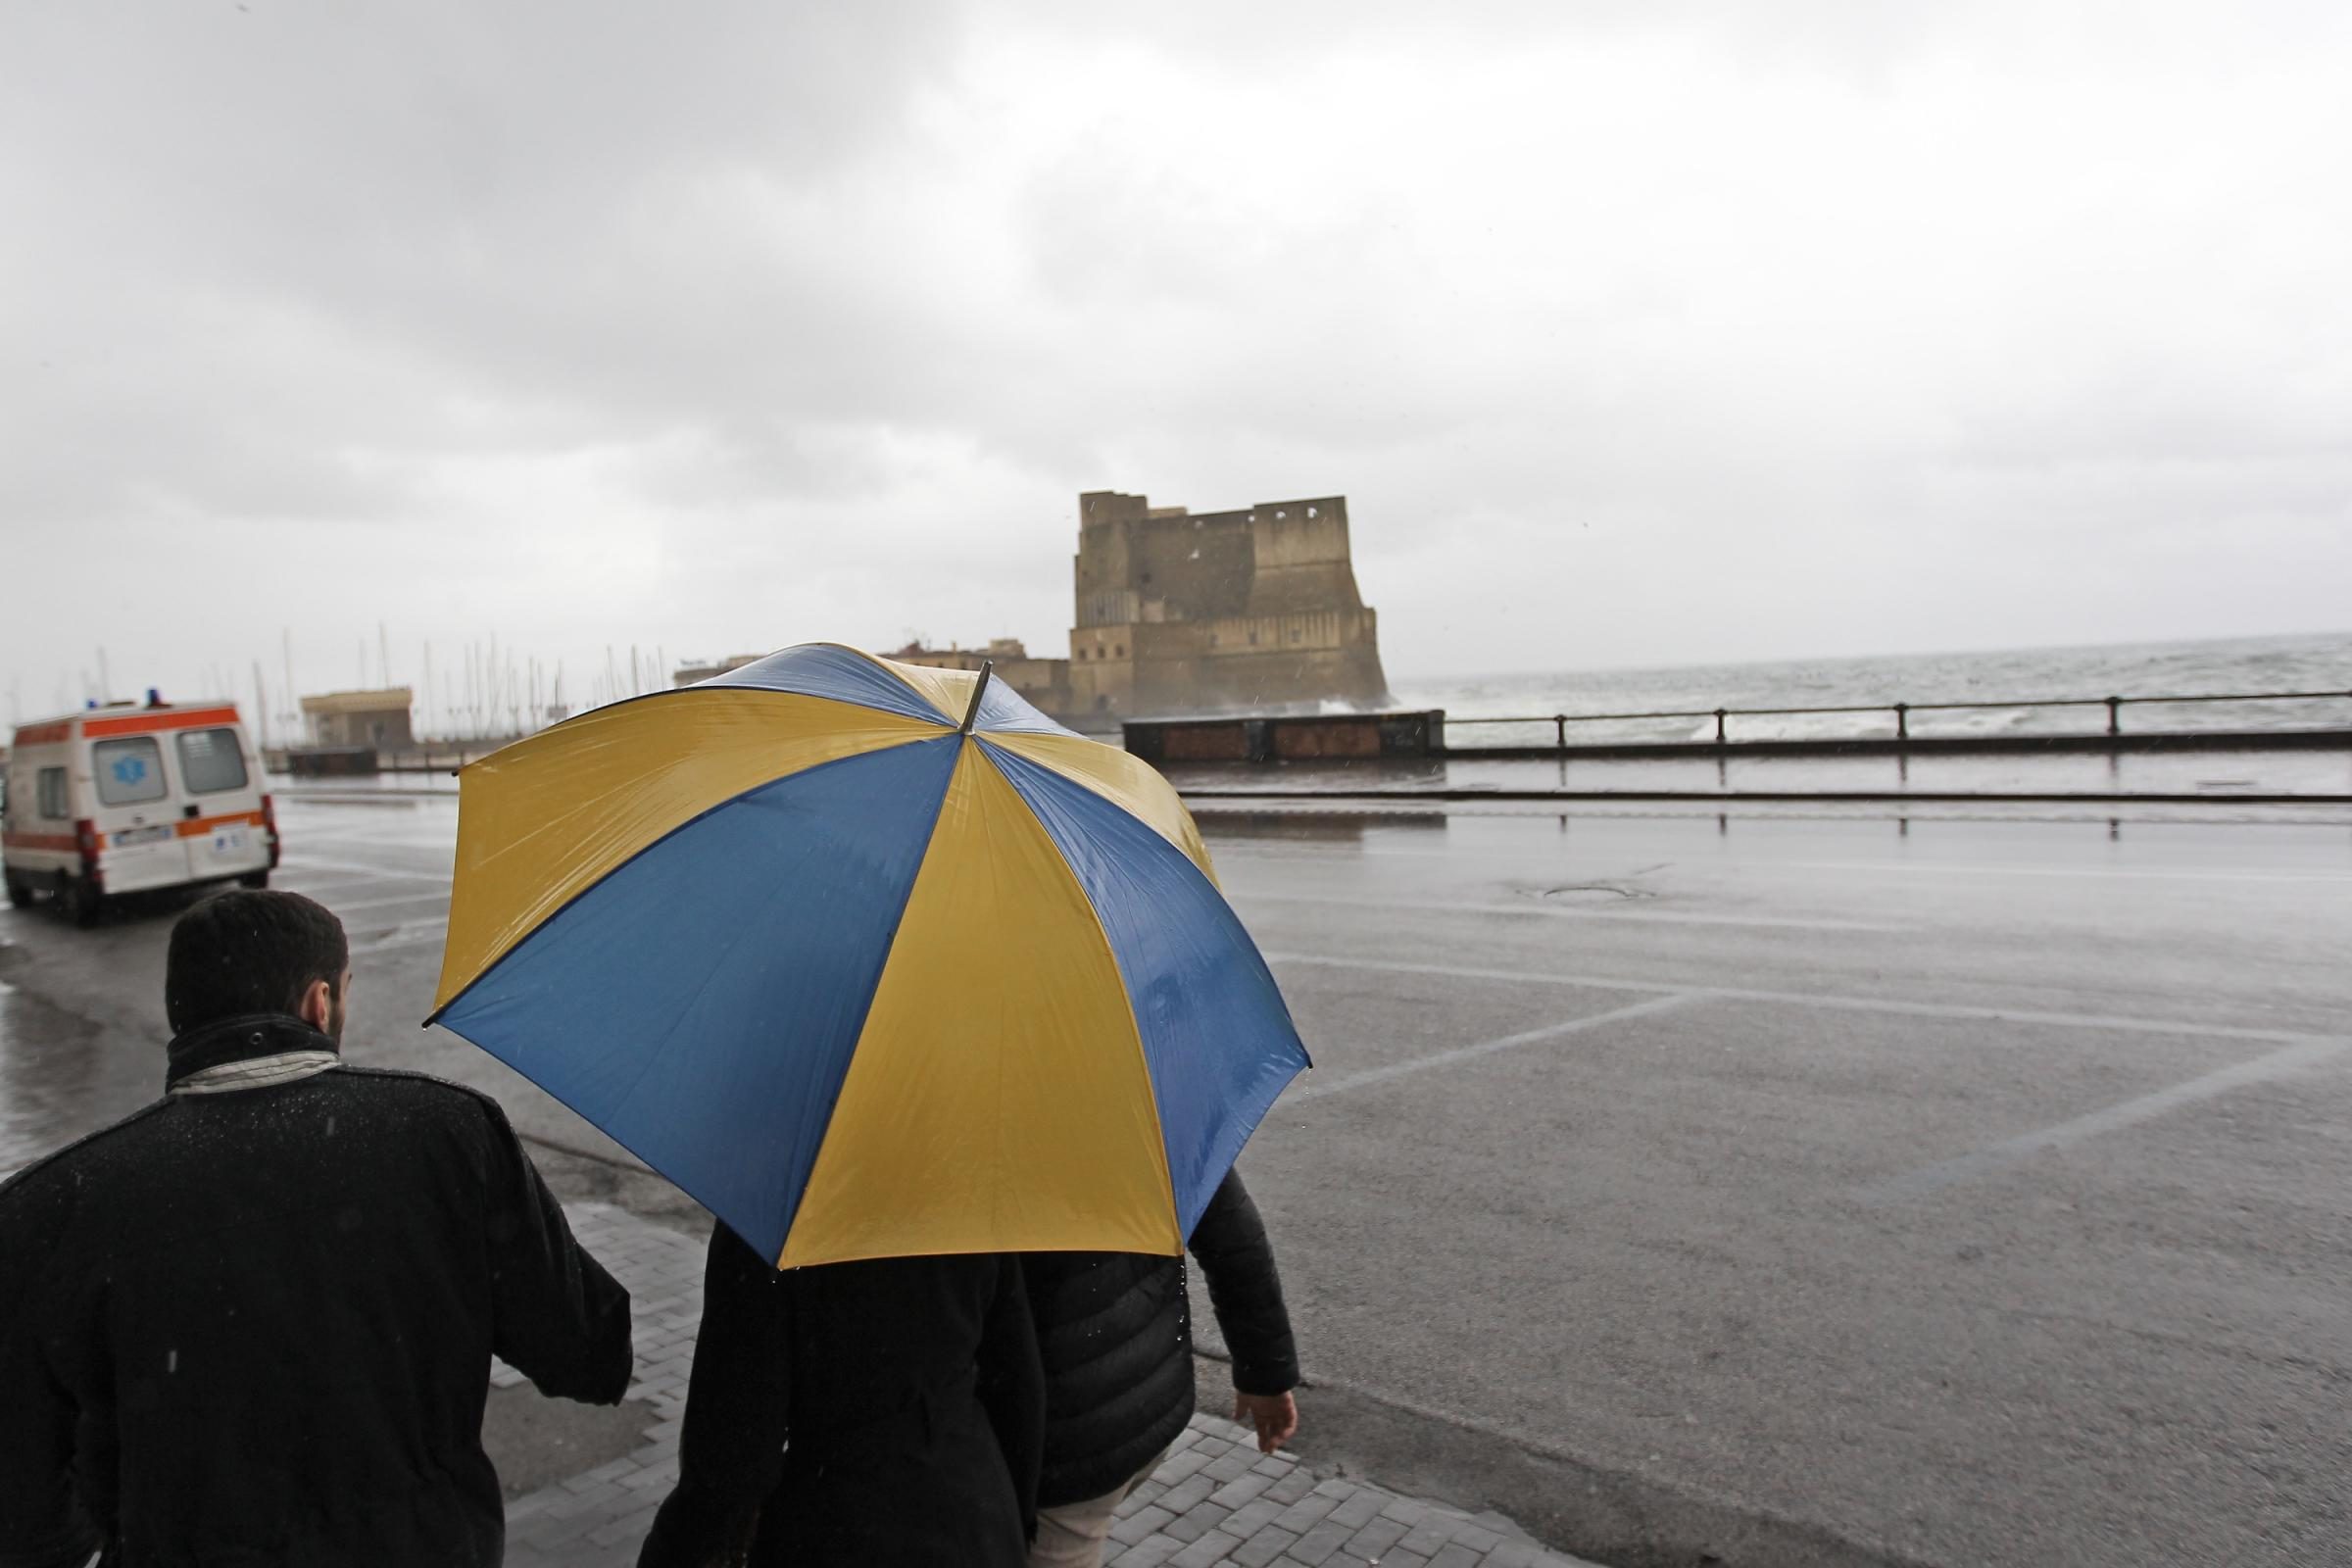 Meteo Napoli, la primavera arriva con qualche pioggia: le previsioni